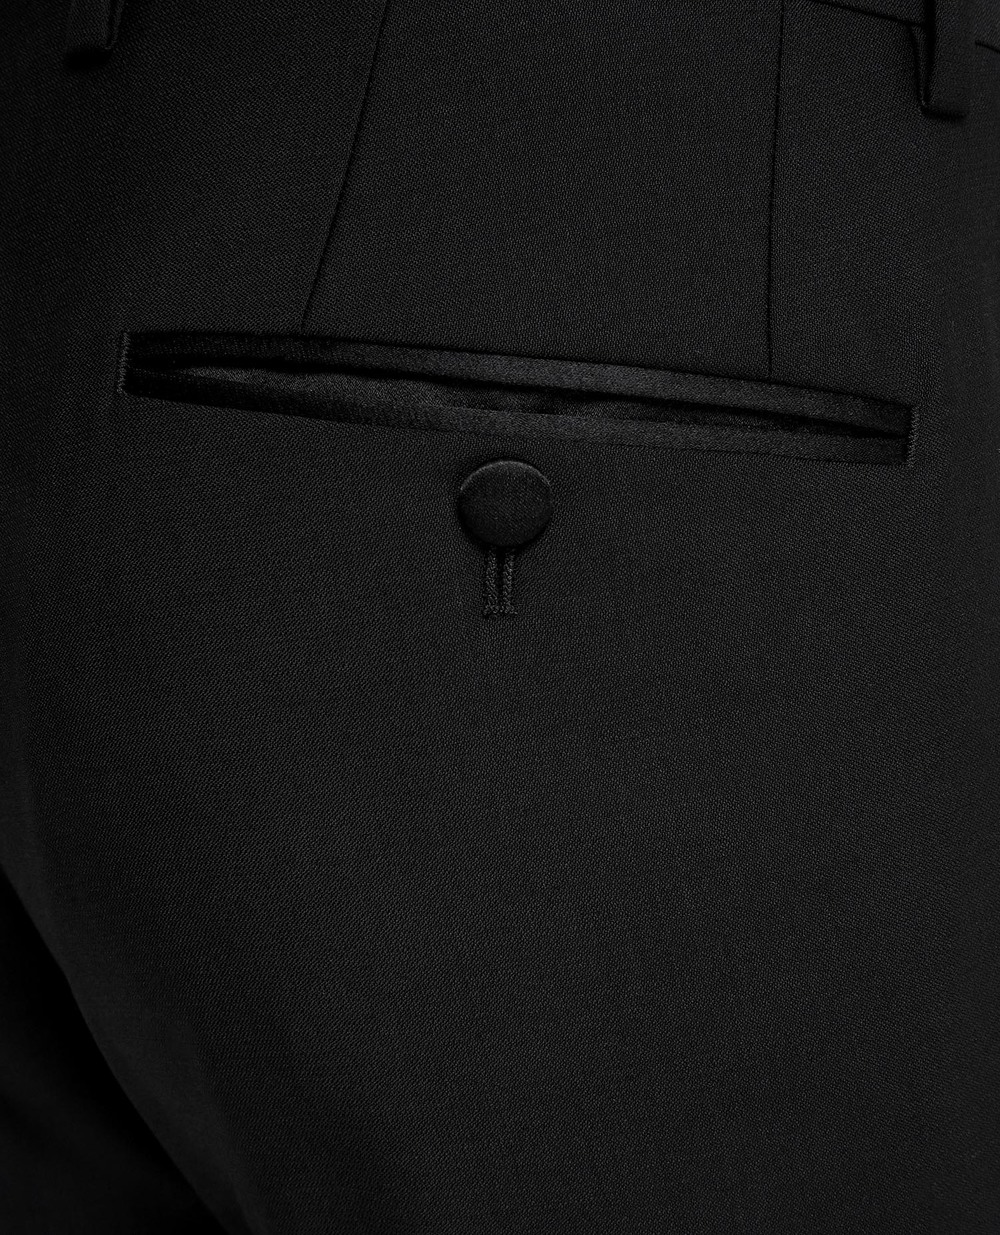 Шерстяной костюм Martini (пиджак, жилет, брюки) Dolce&Gabbana GKBEMT-FU2Z8, черный цвет • Купить в интернет-магазине Kameron